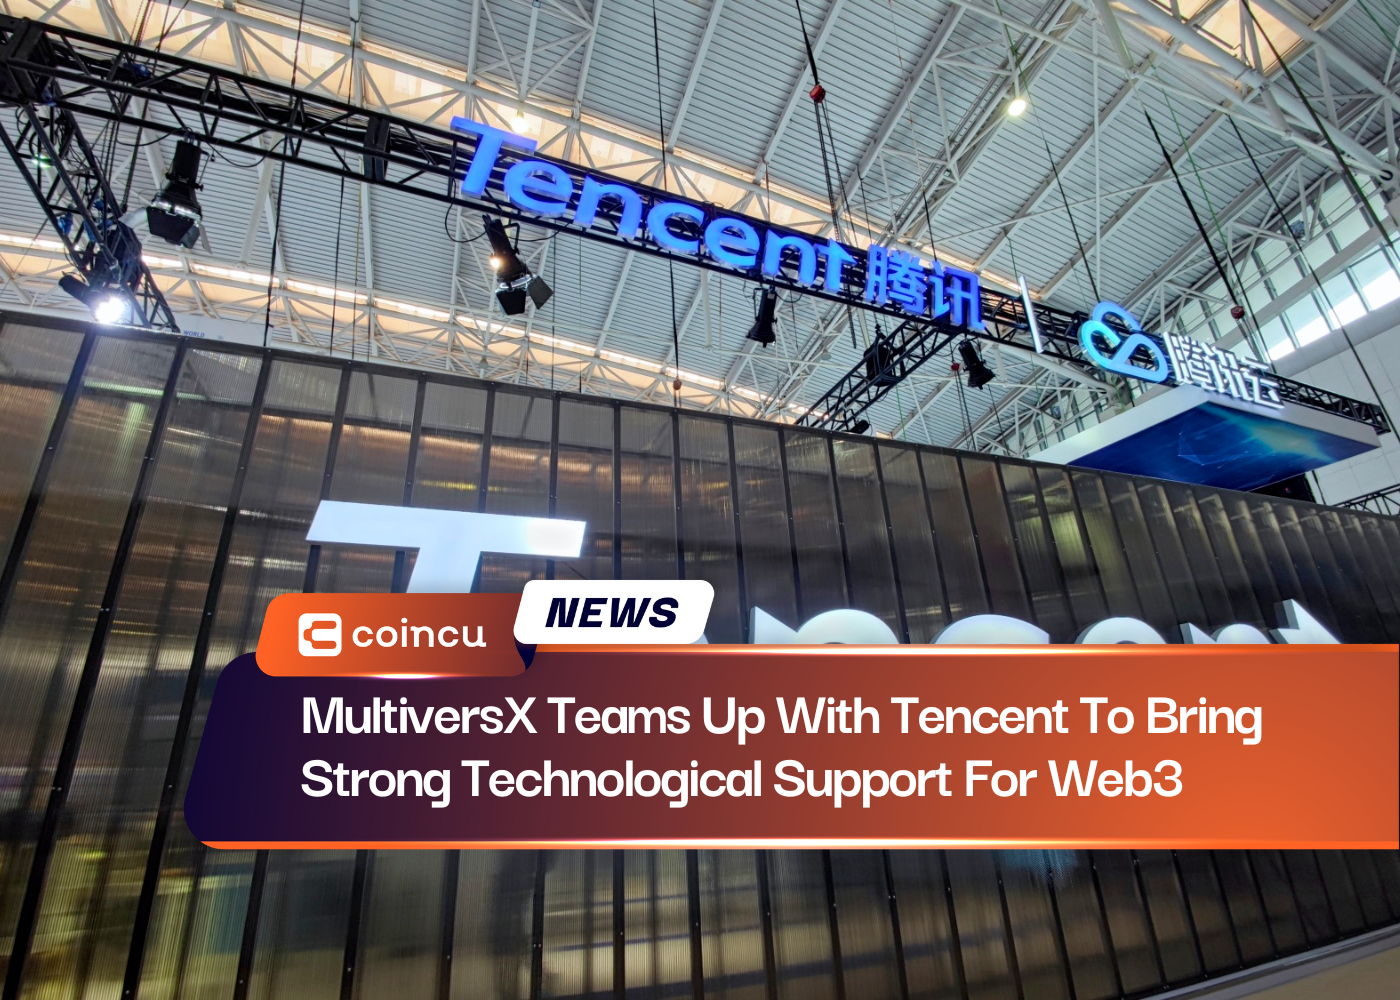 MultiversX arbeitet mit Tencent zusammen, um starke technologische Unterstützung für Web3 bereitzustellen